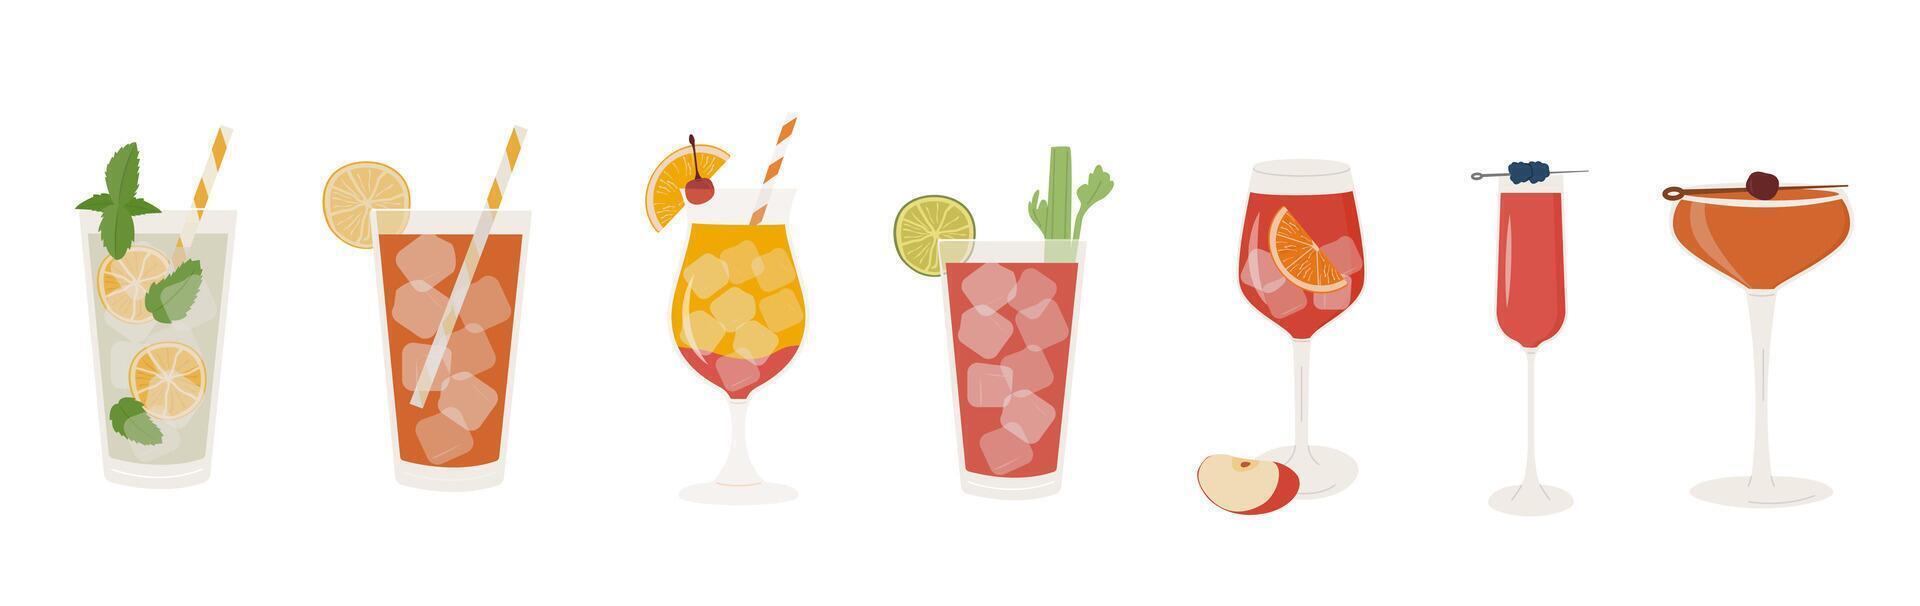 uppsättning av populär klassisk cocktails. annorlunda alkoholhaltig drycker i olika glasögon. sommar aperitif garnerad med kalk vrida, orange skiva och körsbär. vektor illustration av mjuk och alkohol drycker.